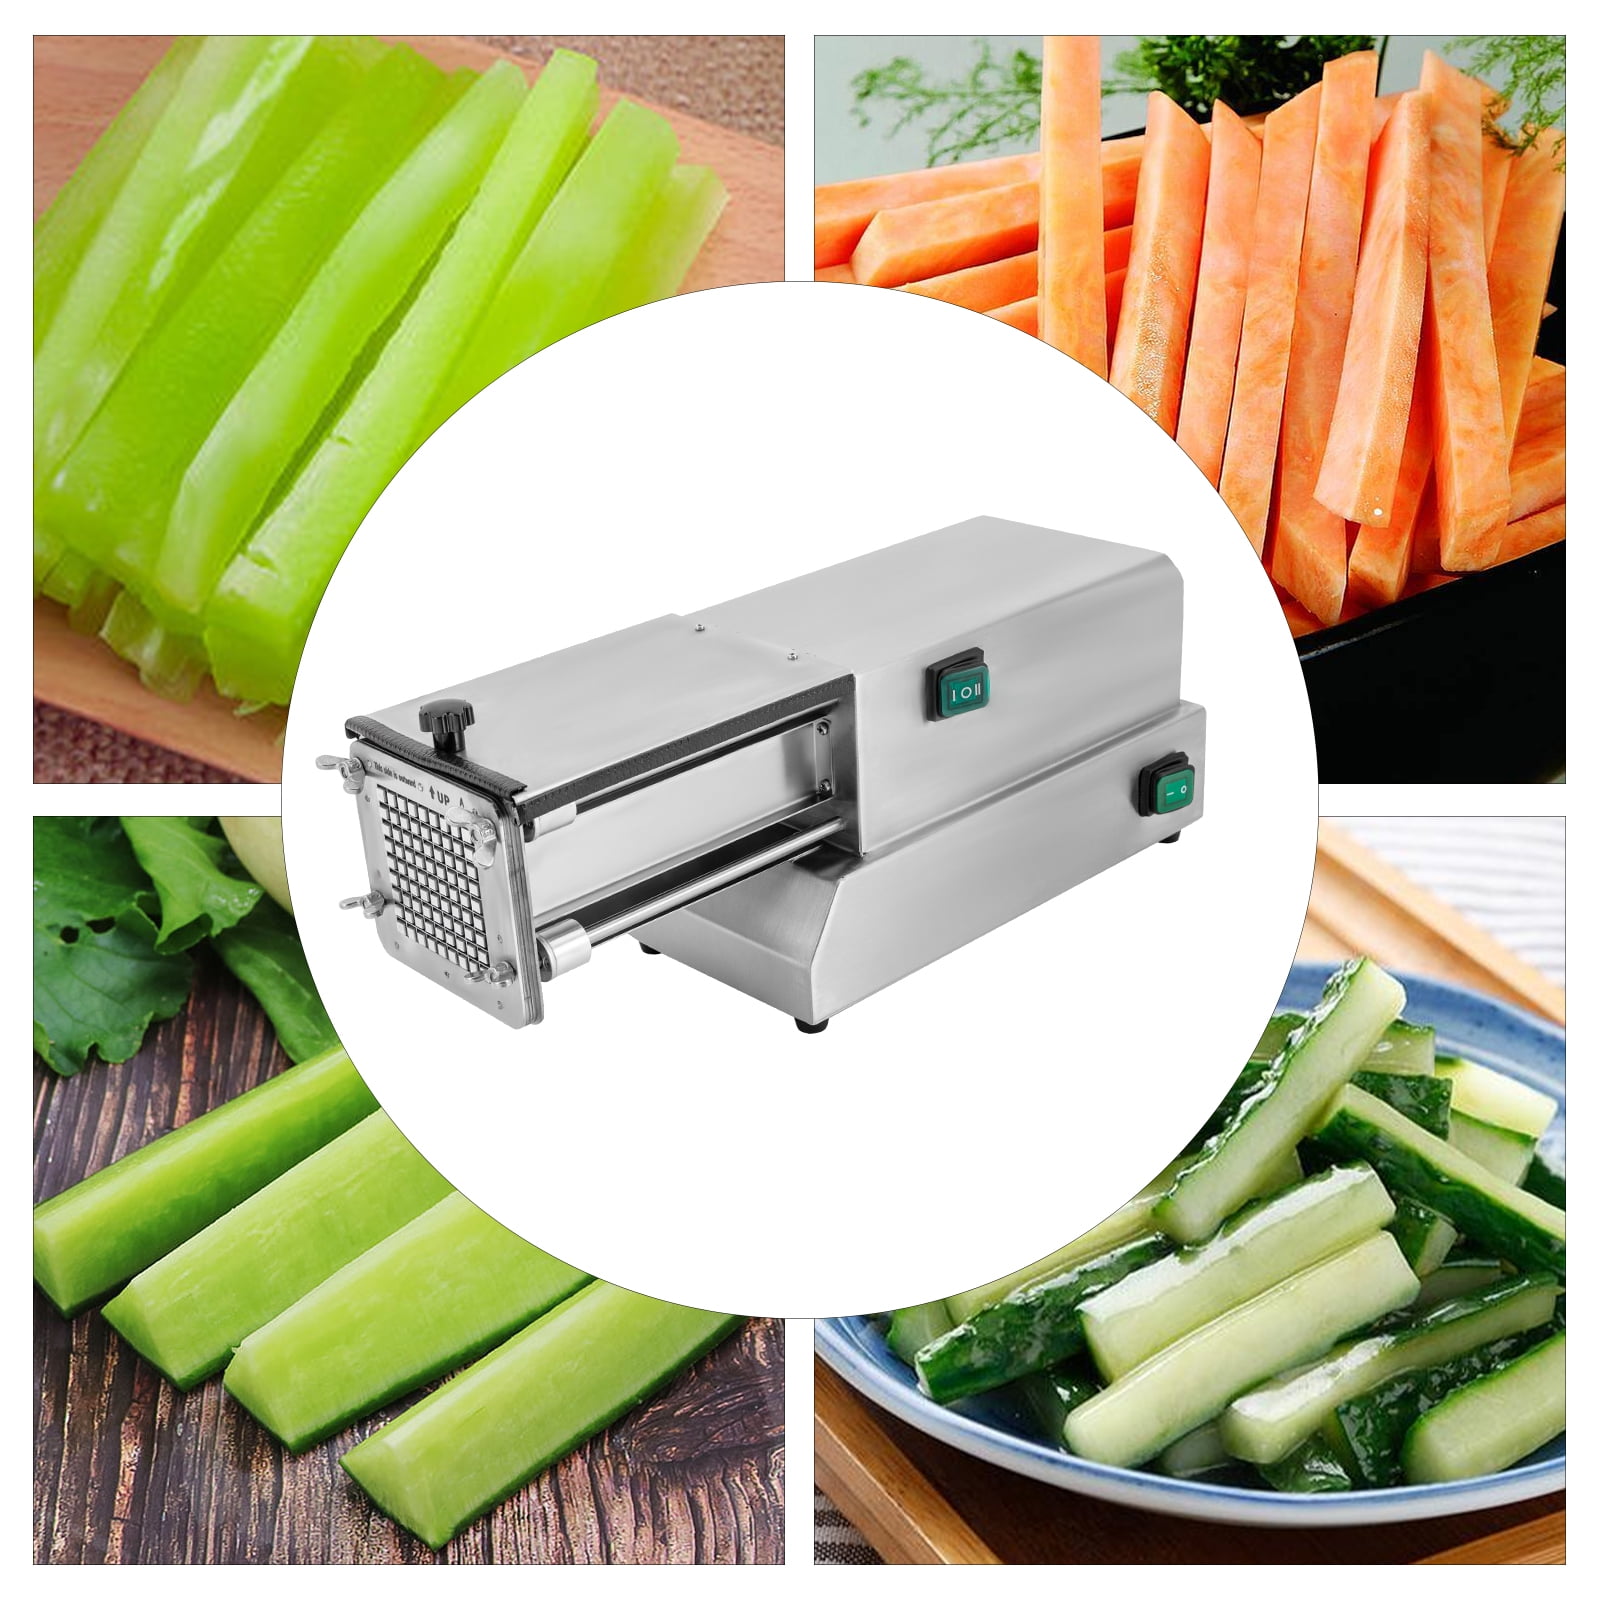 Miumaeov Electric Vegetable Slicer Commercial Fruit Slicer Machine  0-10mm/0-0.4in Thickness Adjustable Stainless Steel for Lemon Potato Onion  Tomato 110V 